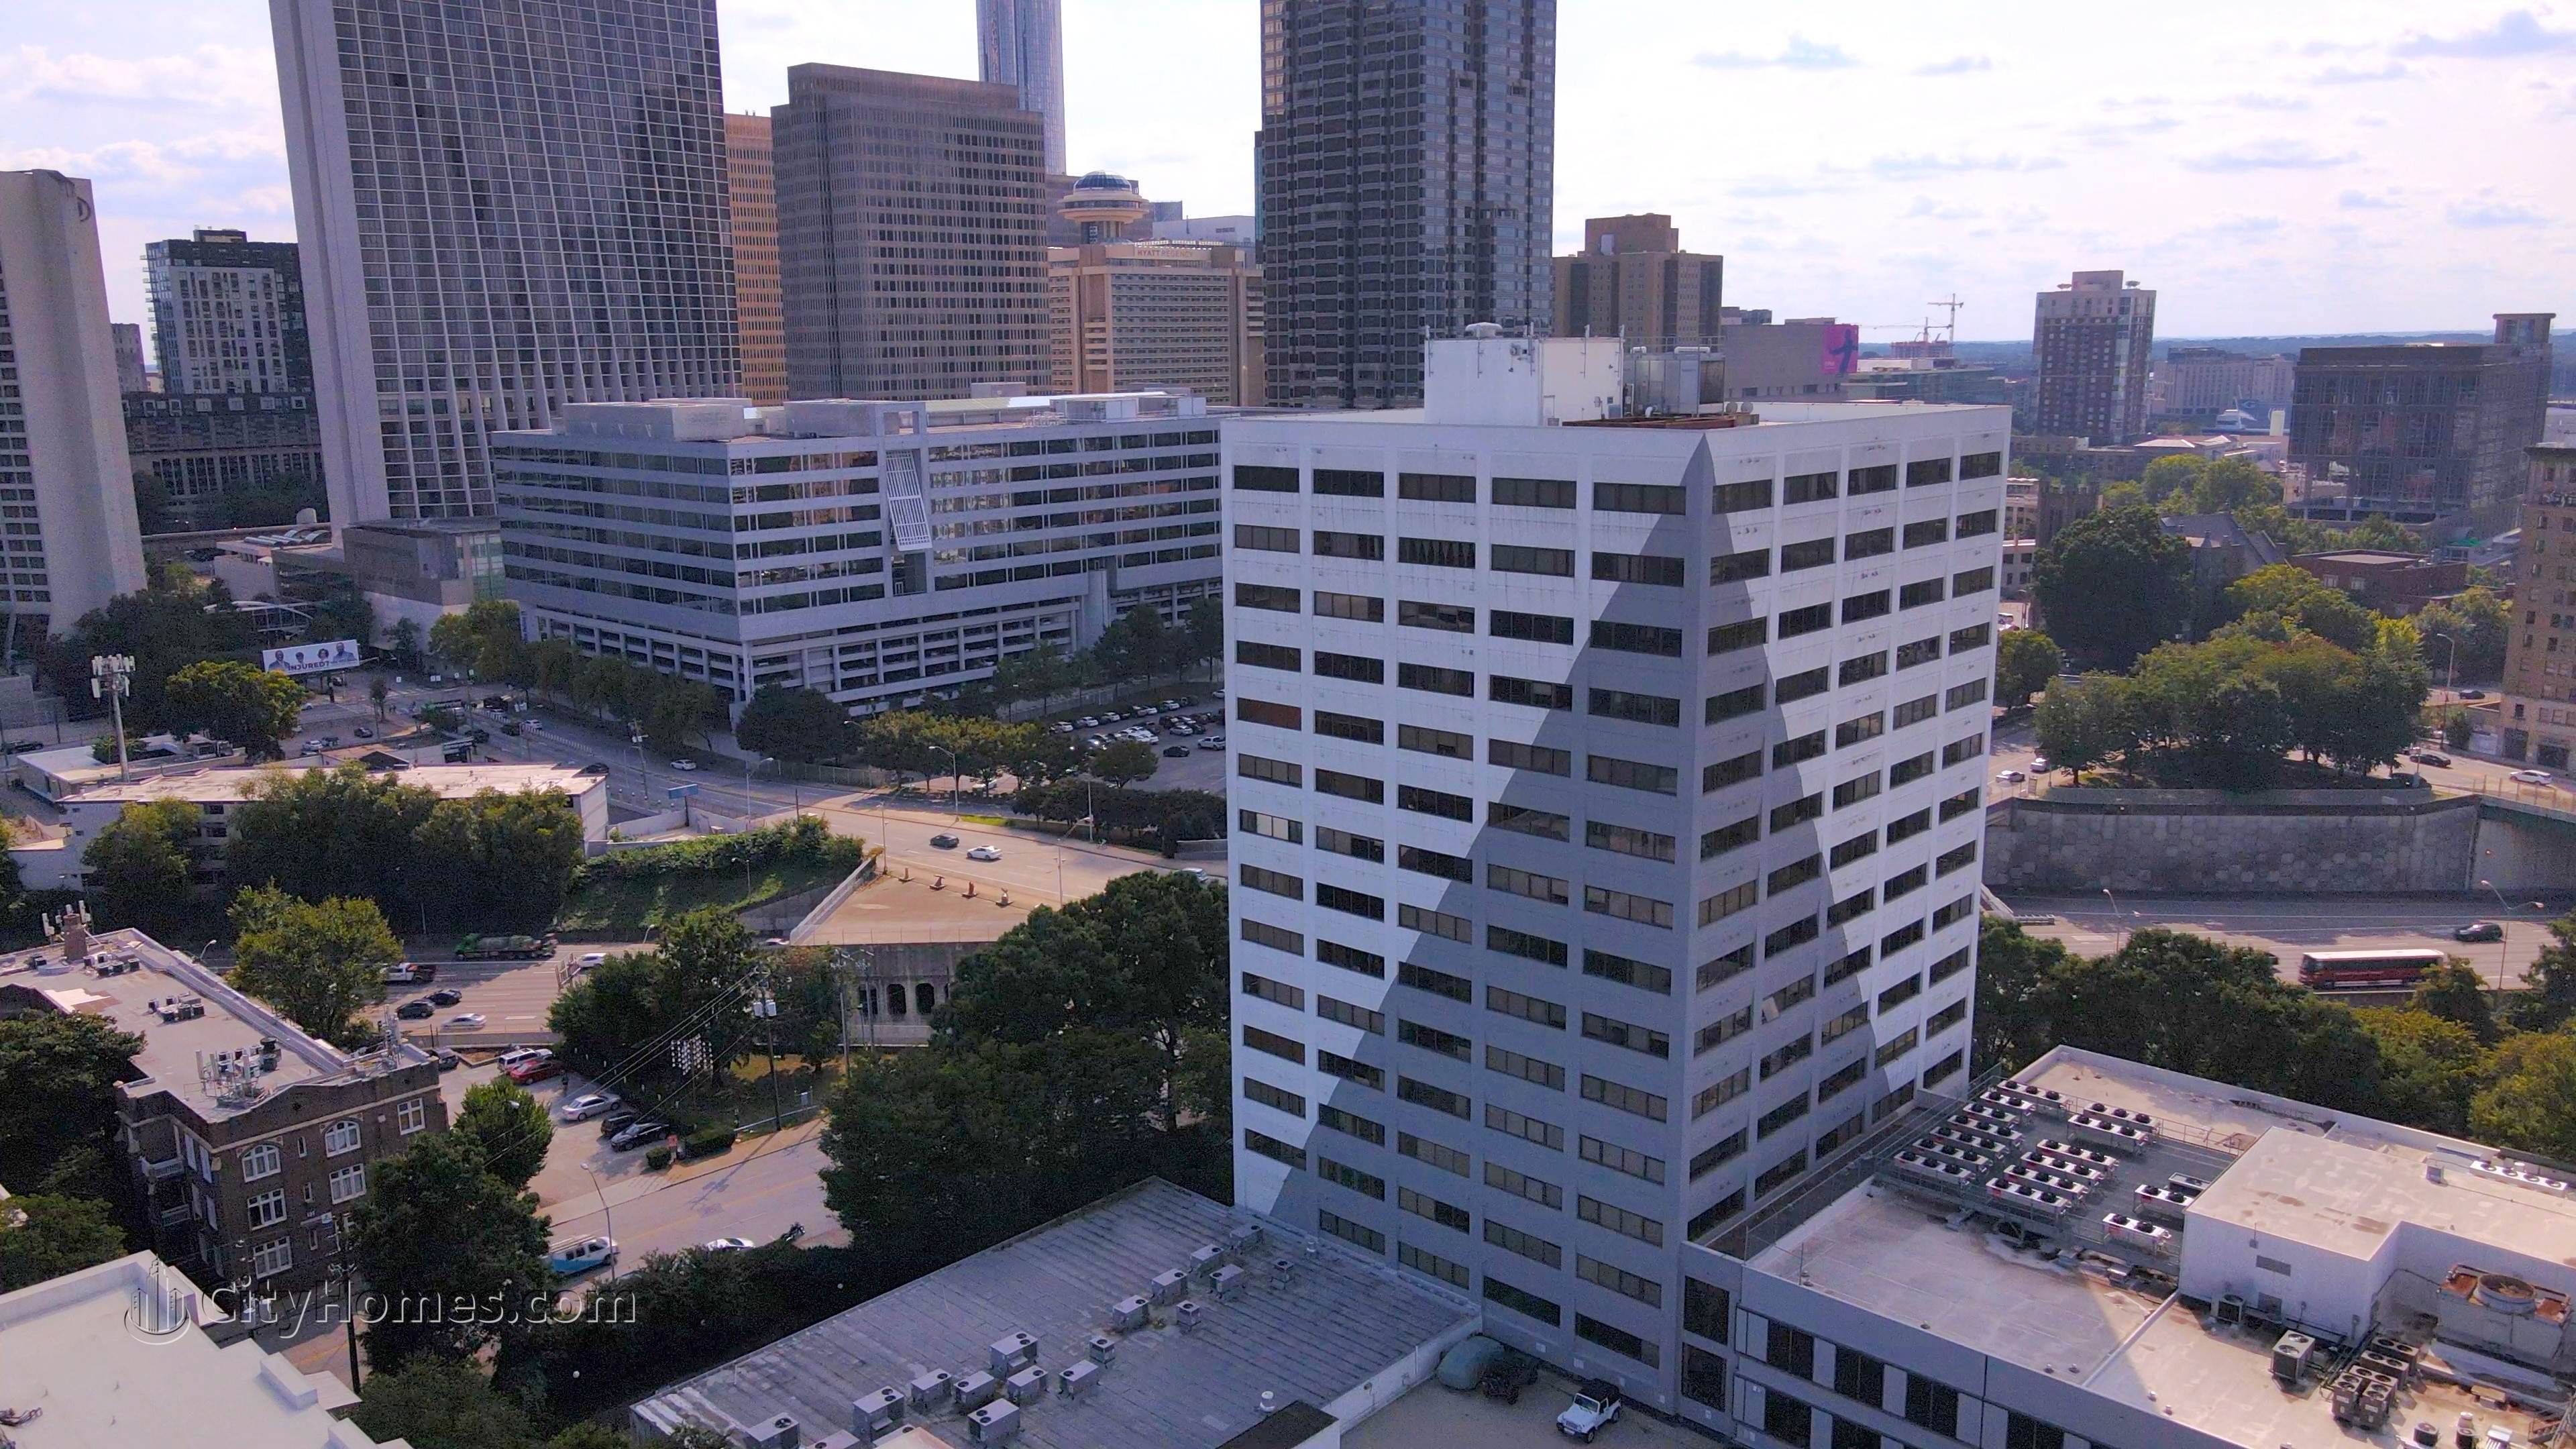 5. Renaissance Lofts edificio a 120 Ralph Mcgill Blvd NE, Downtown Atlanta, Atlanta, GA 30308